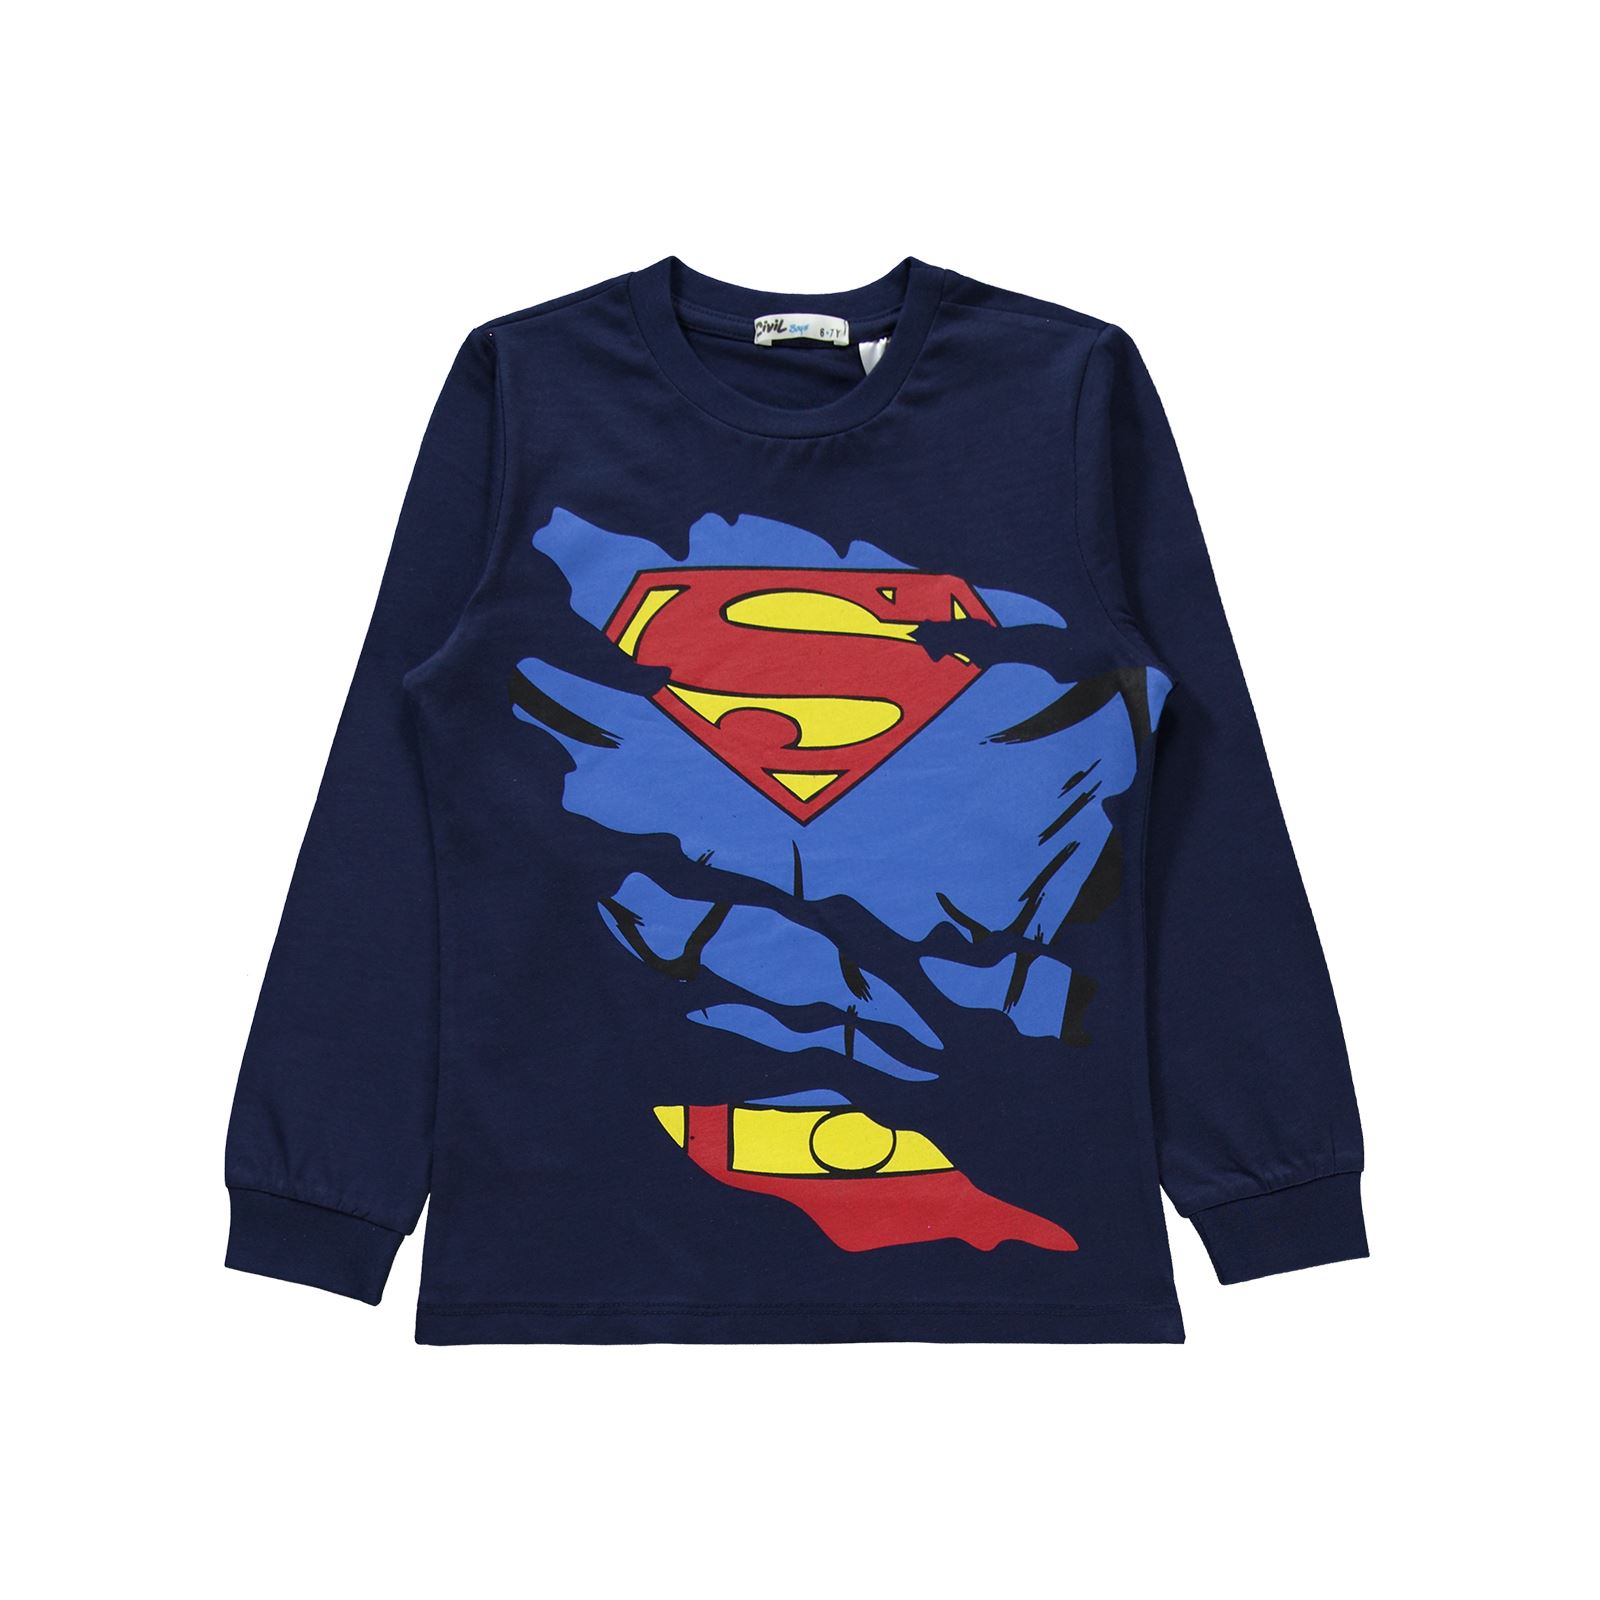 Süperman Erkek Çocuk Pijama Takımı 6-9 Yaş Lacivert